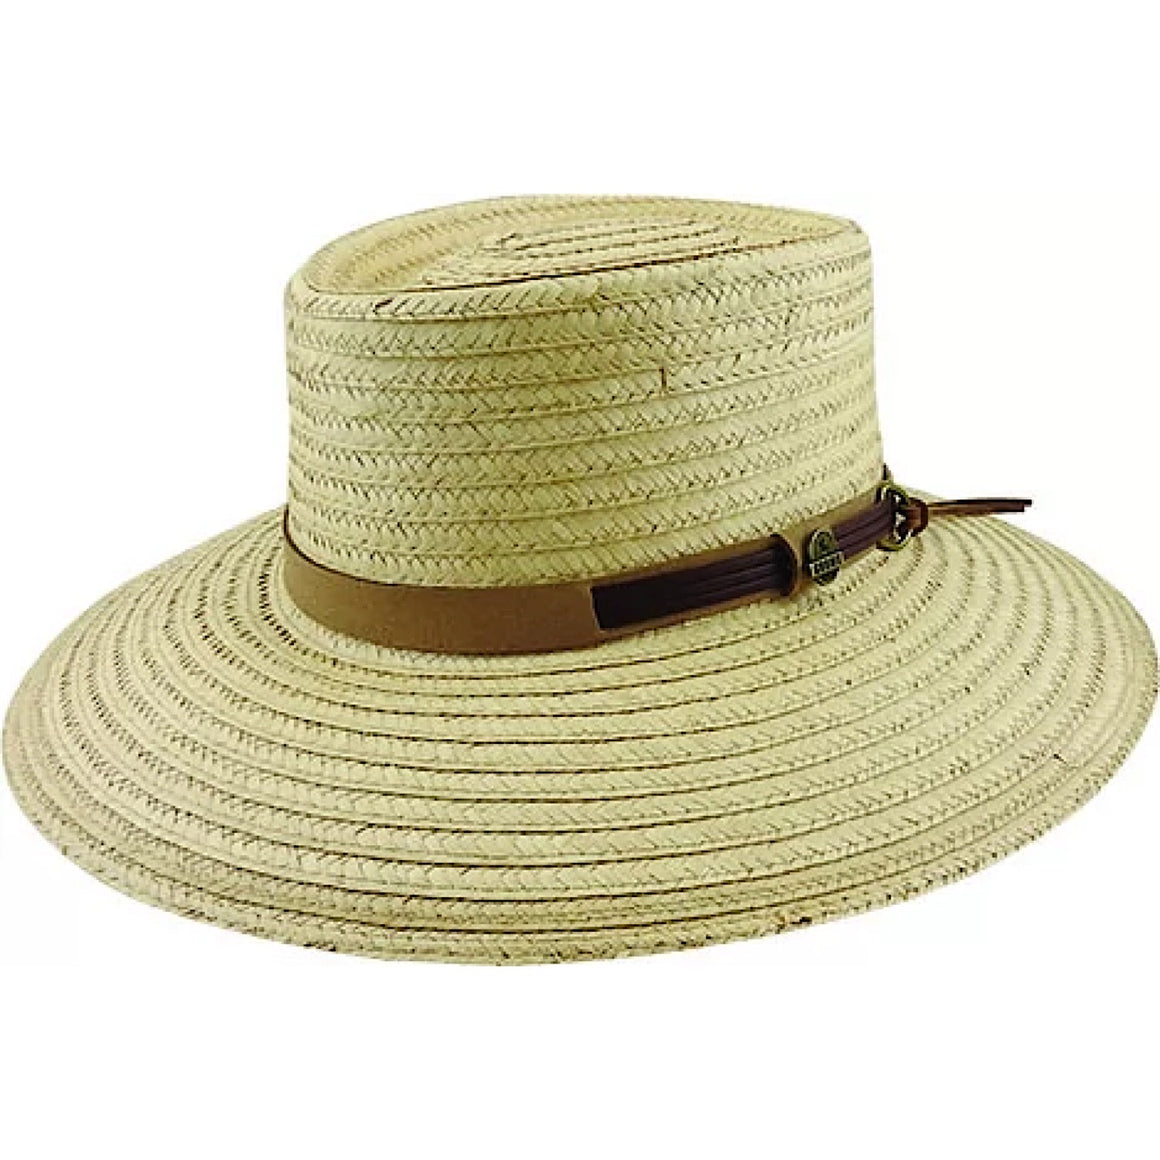 Avenel Frew. Braided Palm Straw Hat with Suede Trim & Tails